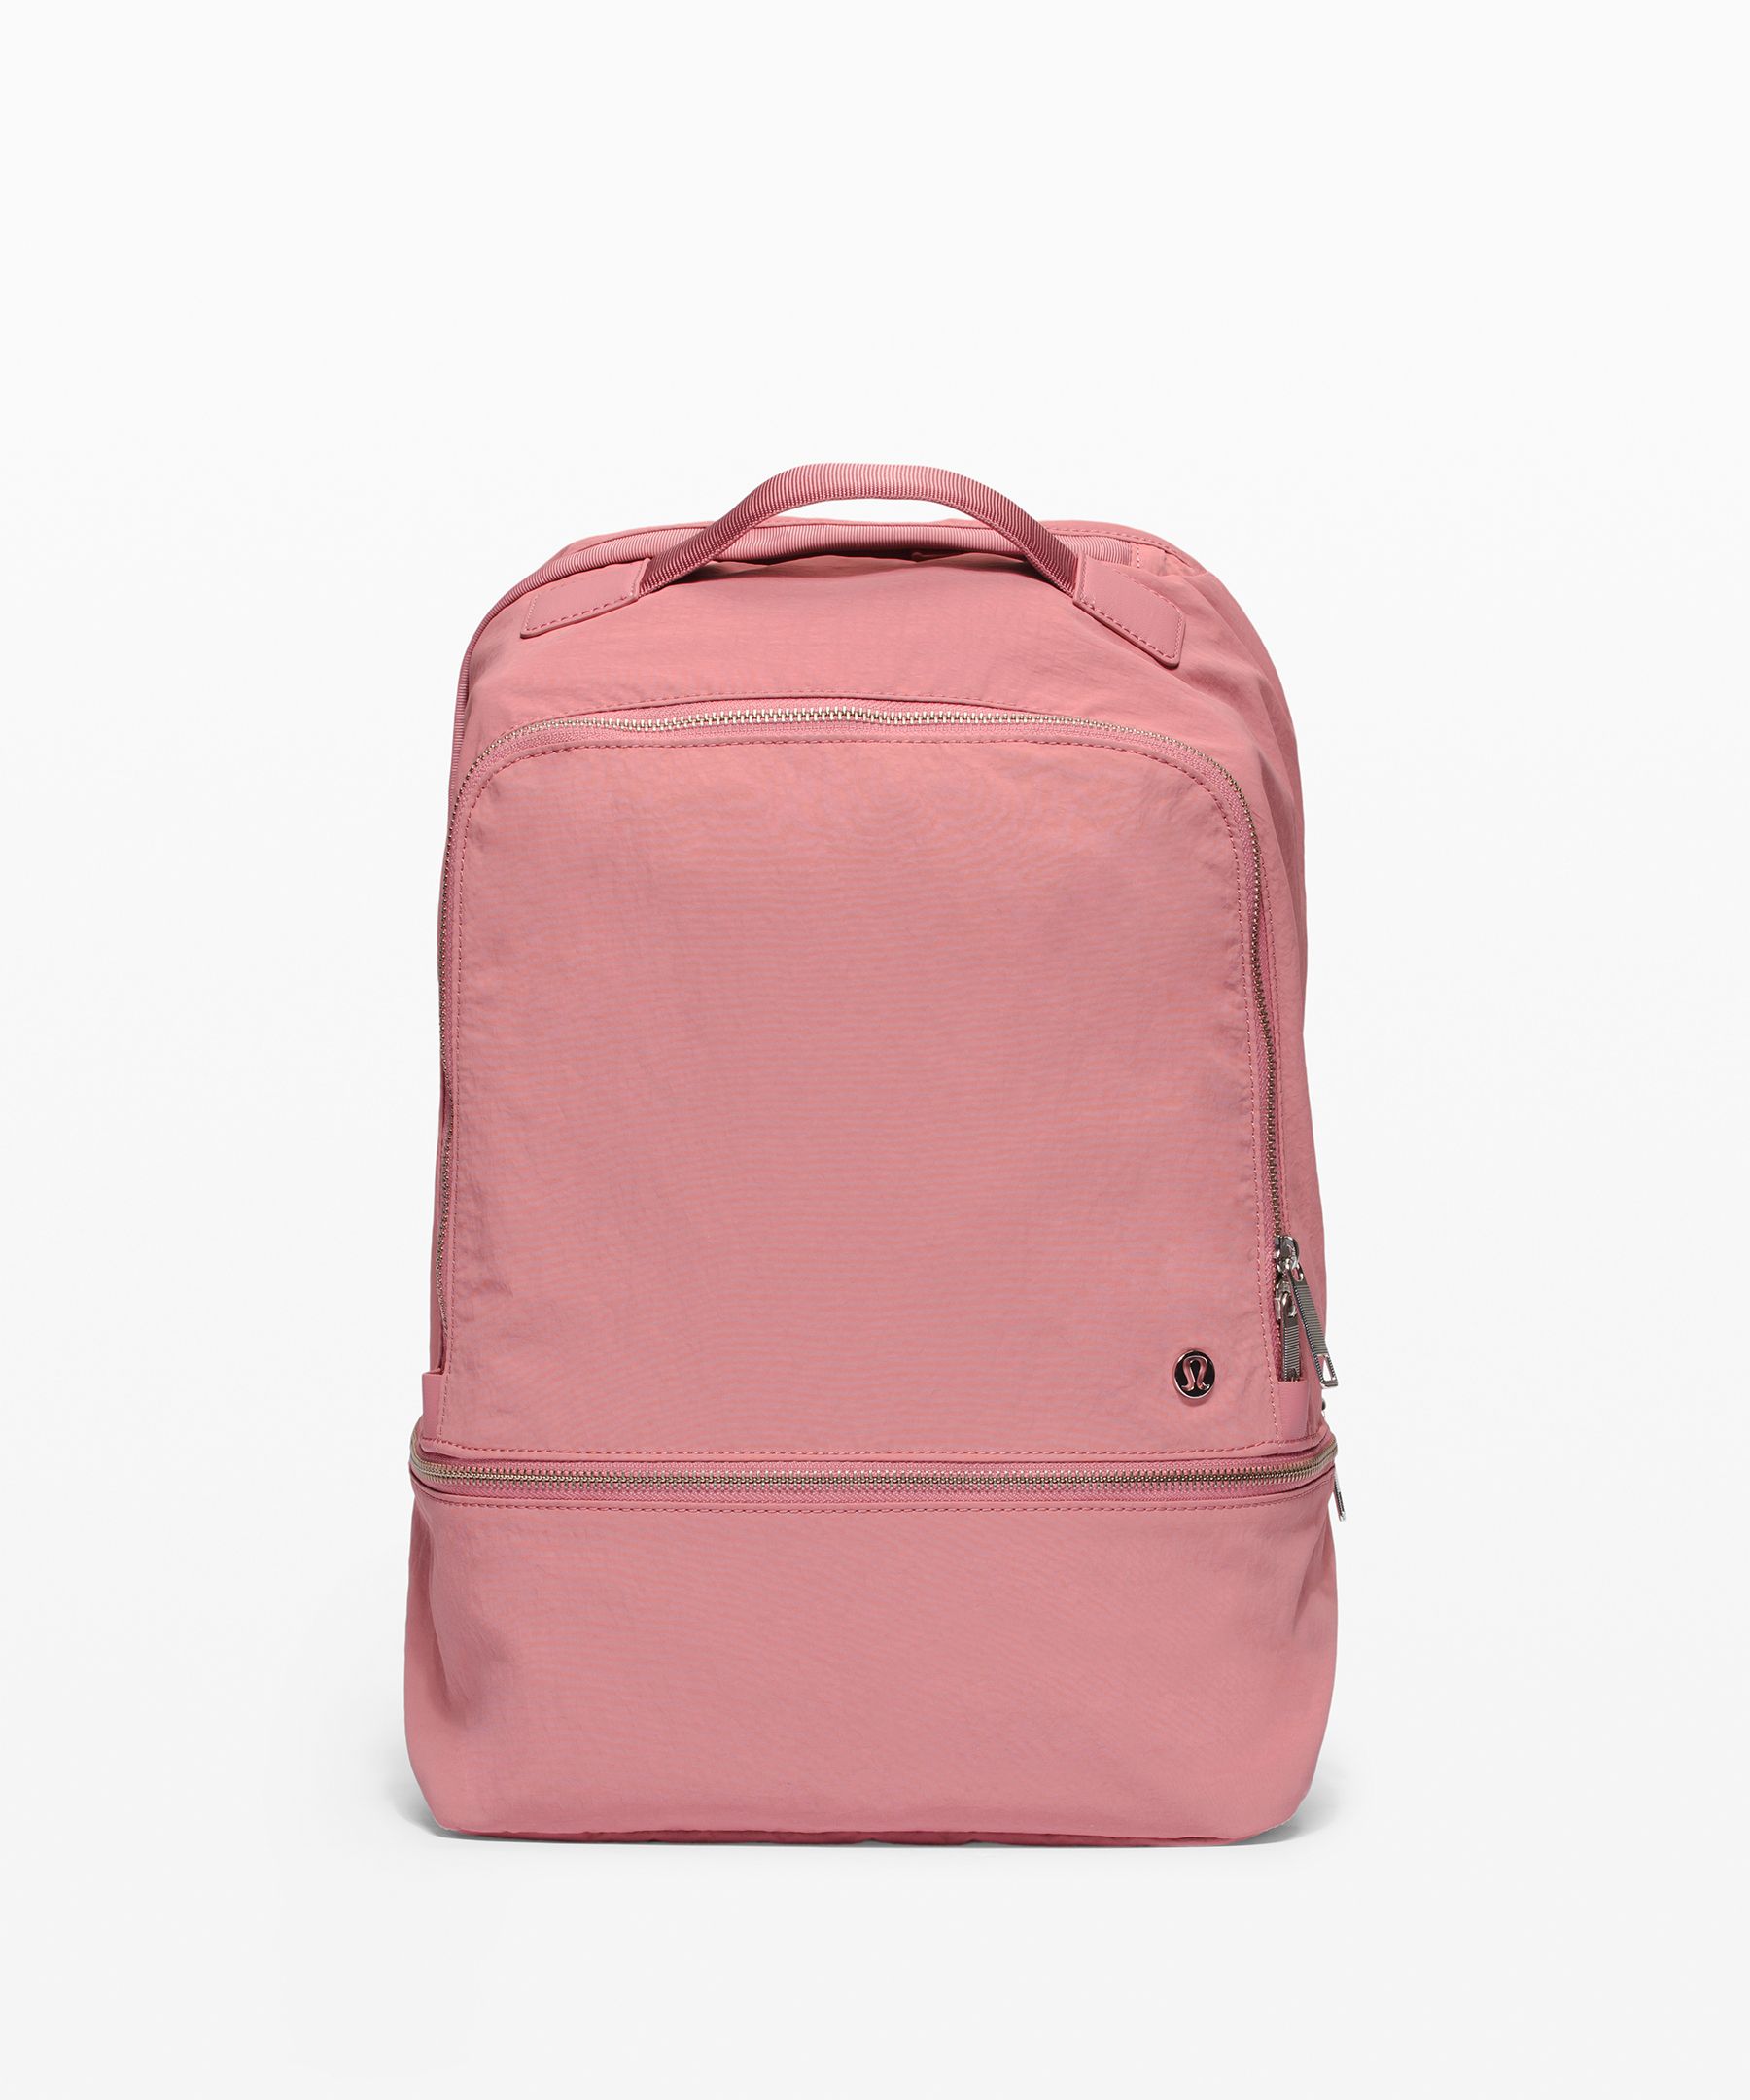 women's lululemon backpack